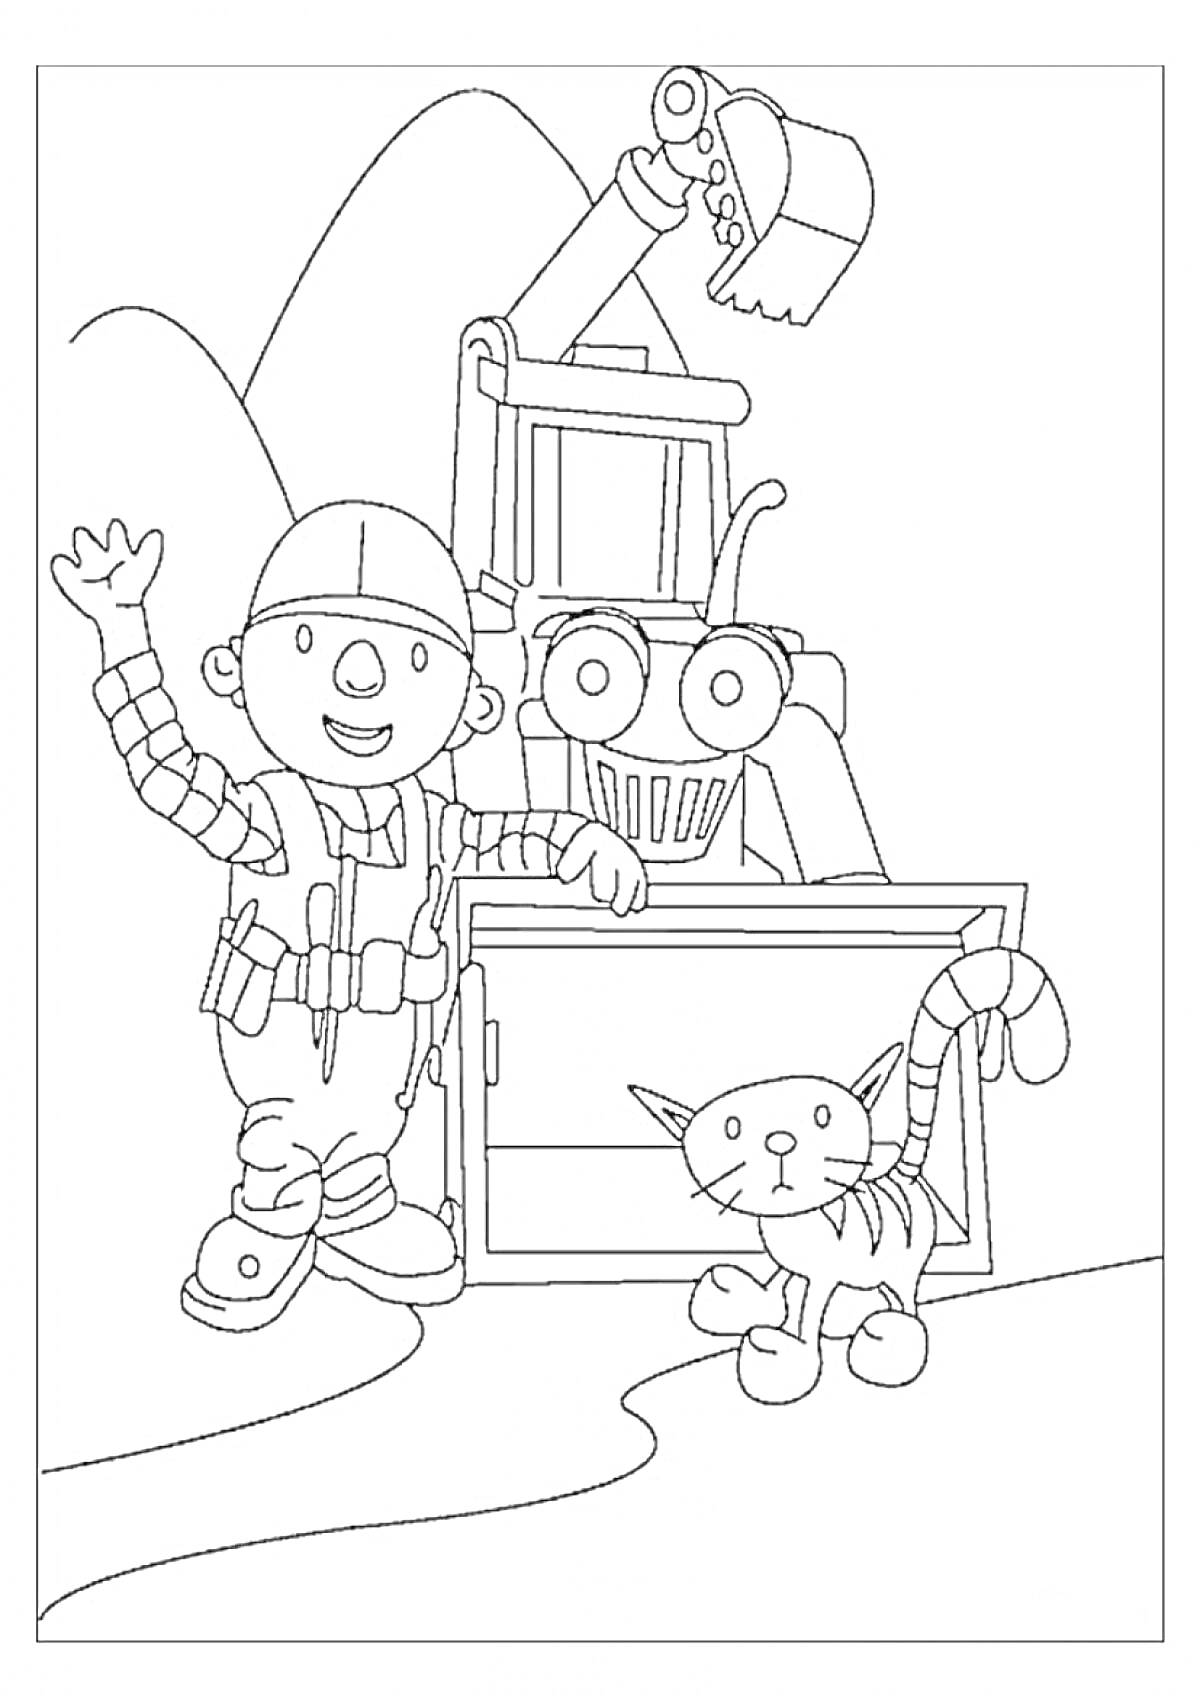 Раскраска Боб строитель с экскаватором и котом на фоне гор